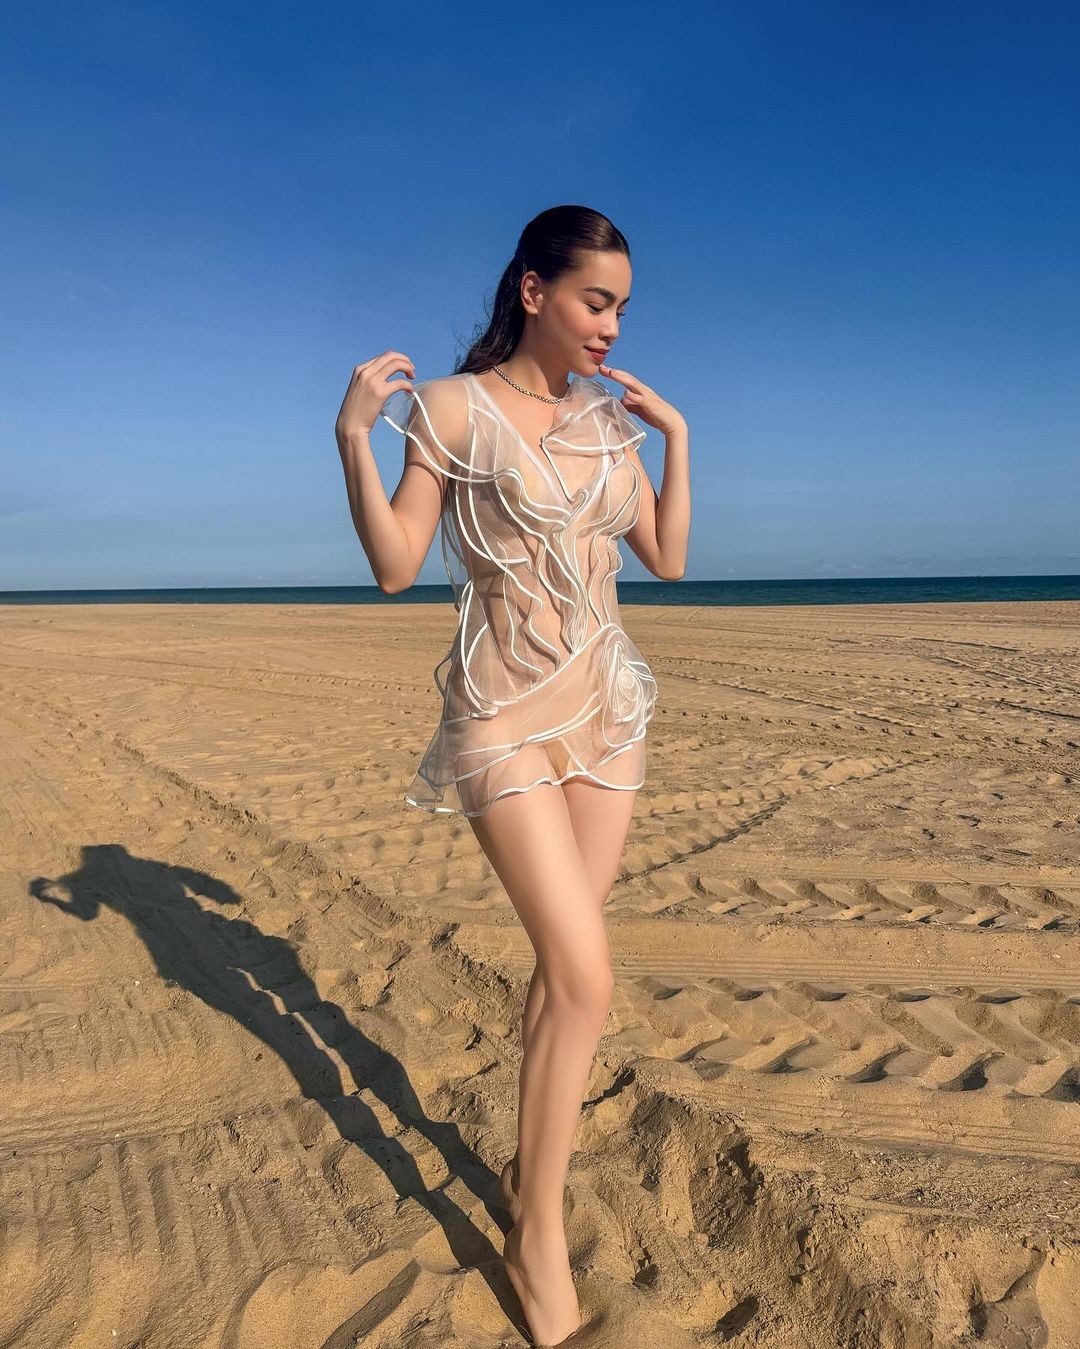 Hồ Ngọc Hà và dàn mỹ nhân Việt khởi động đầu hè với áo tắm ảnh 3